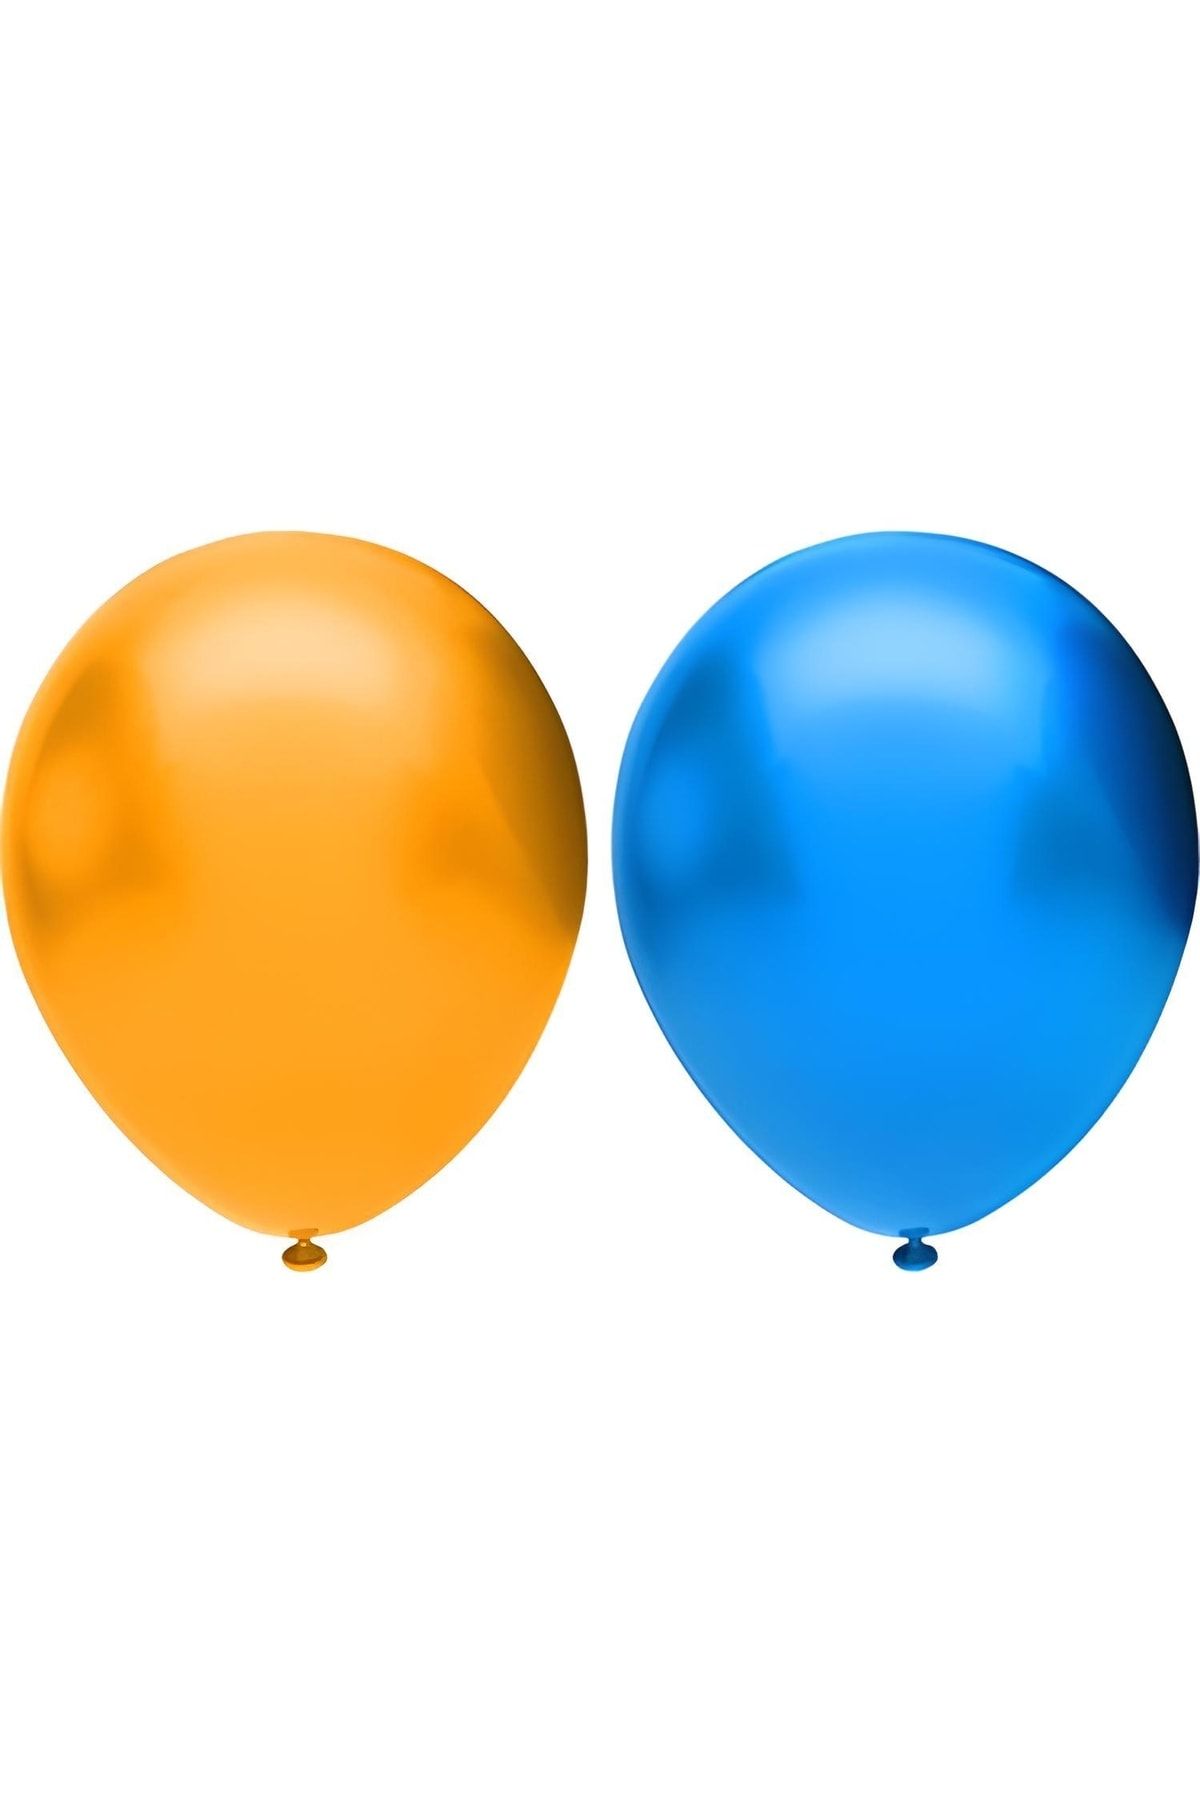 HKNYS 60 Adet Mavi-altın(gold) Metalik Balon Helyum Gazı Uyumludur.-doğum Günü Parti Balonları